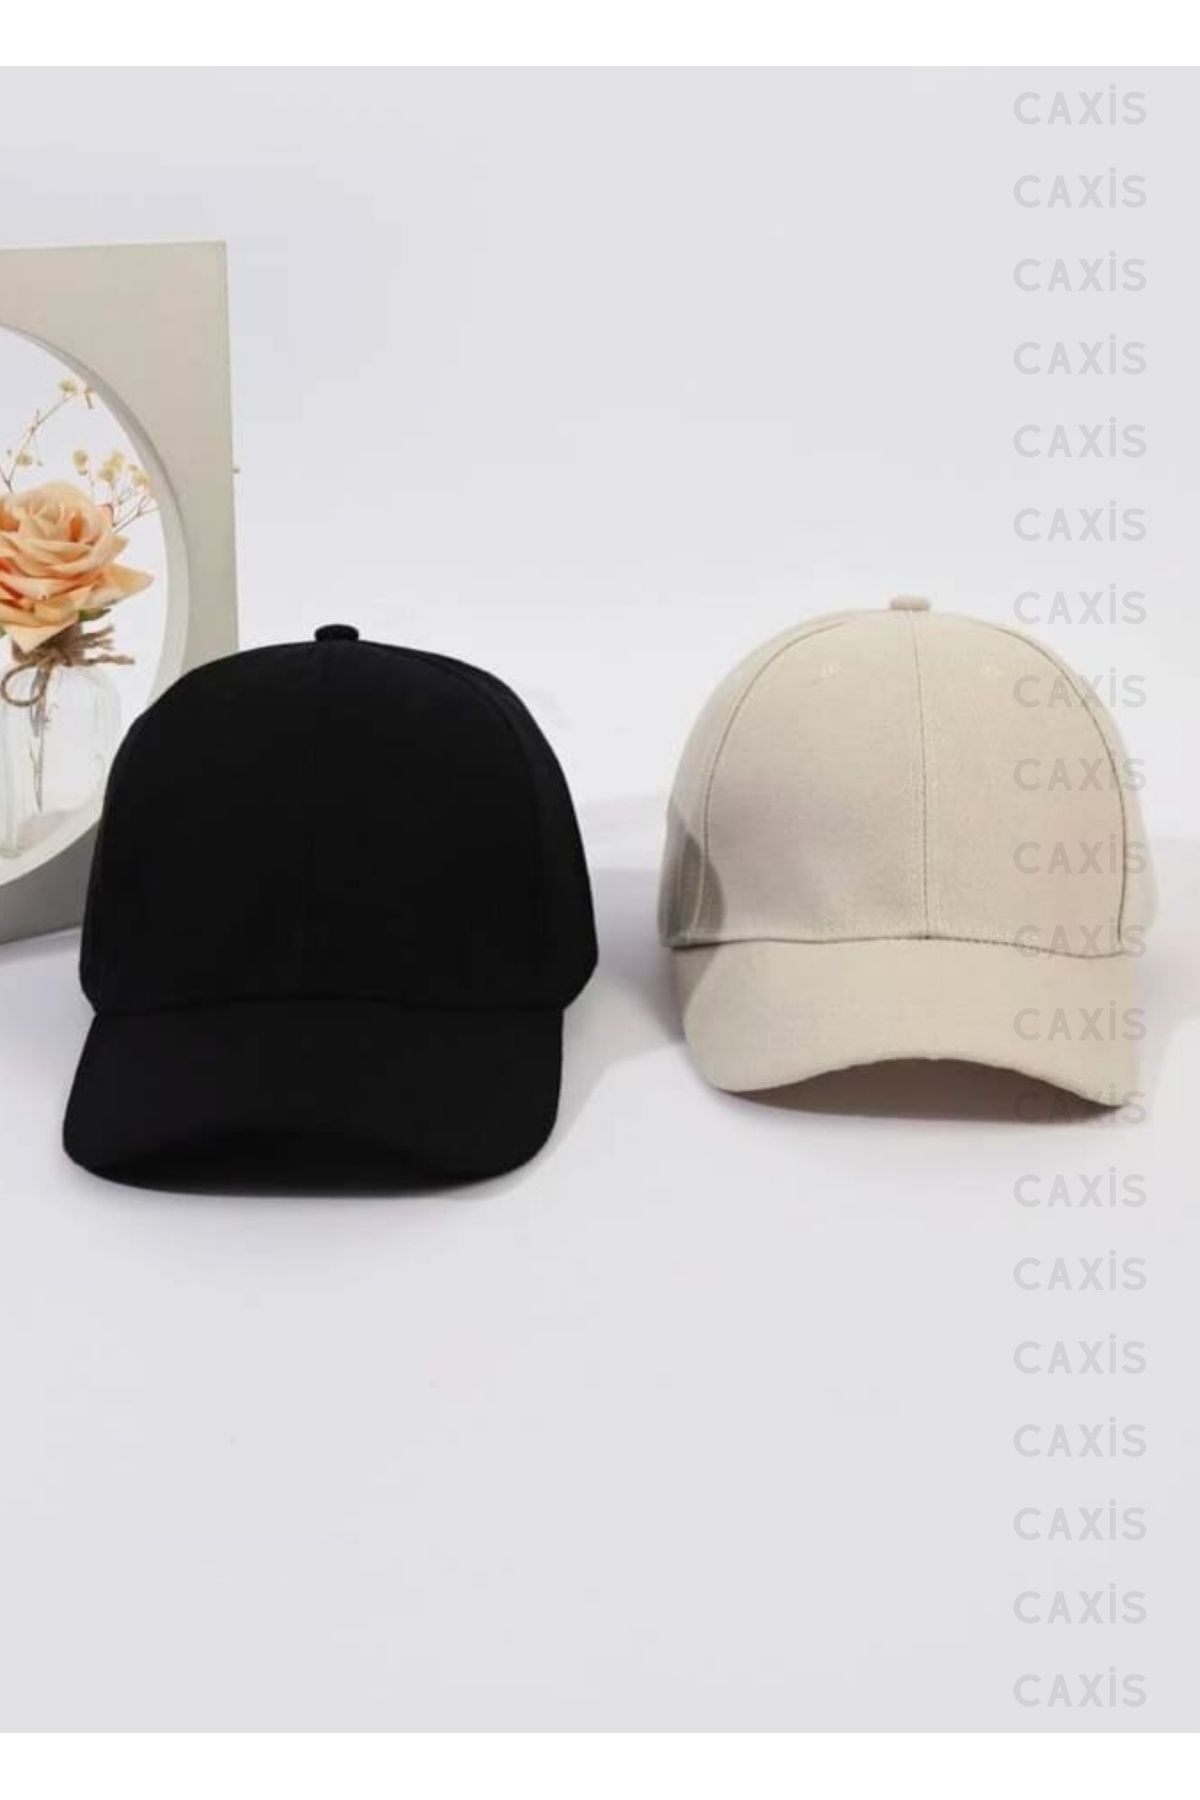 caxis Spor Şapka Unisex 2 Adet Arkası Cırtlı Ayarlanabilir